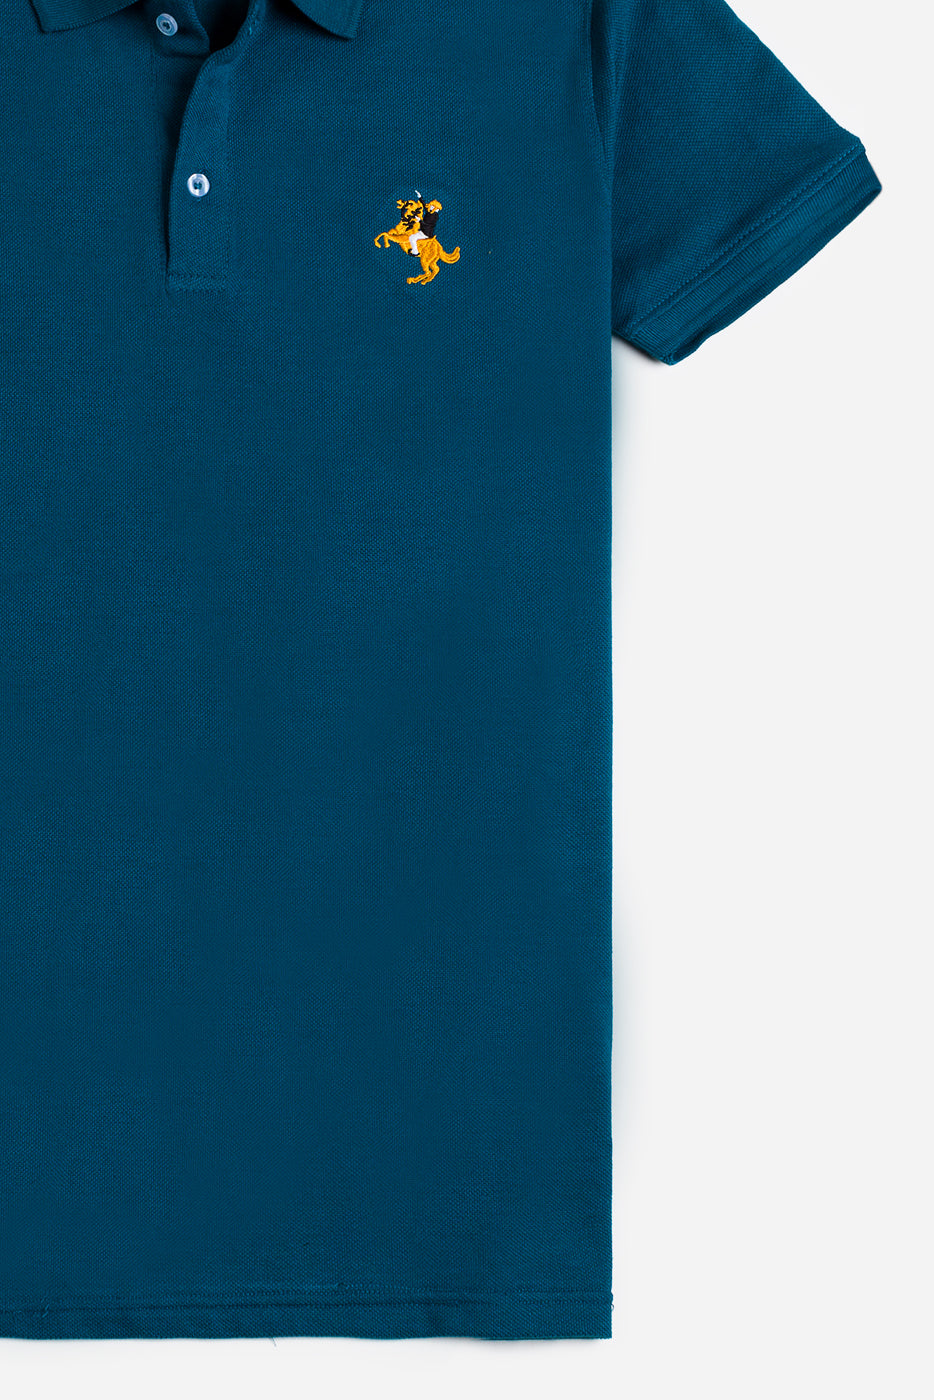 GRDNO Premium Polo Shirt – Aqua Blue